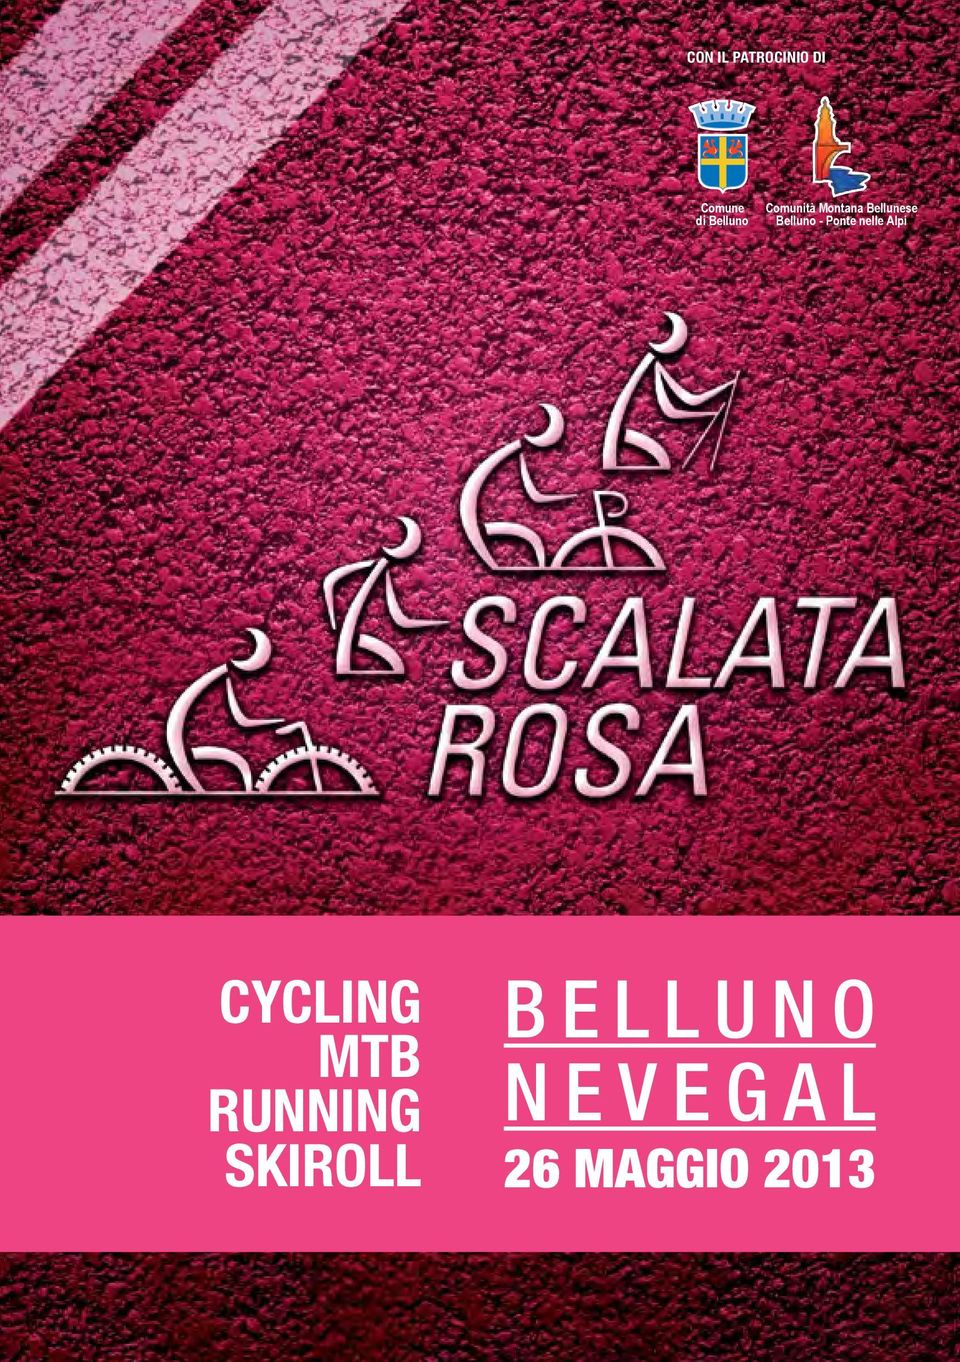 Belluno - Ponte nelle Alpi CYCLING